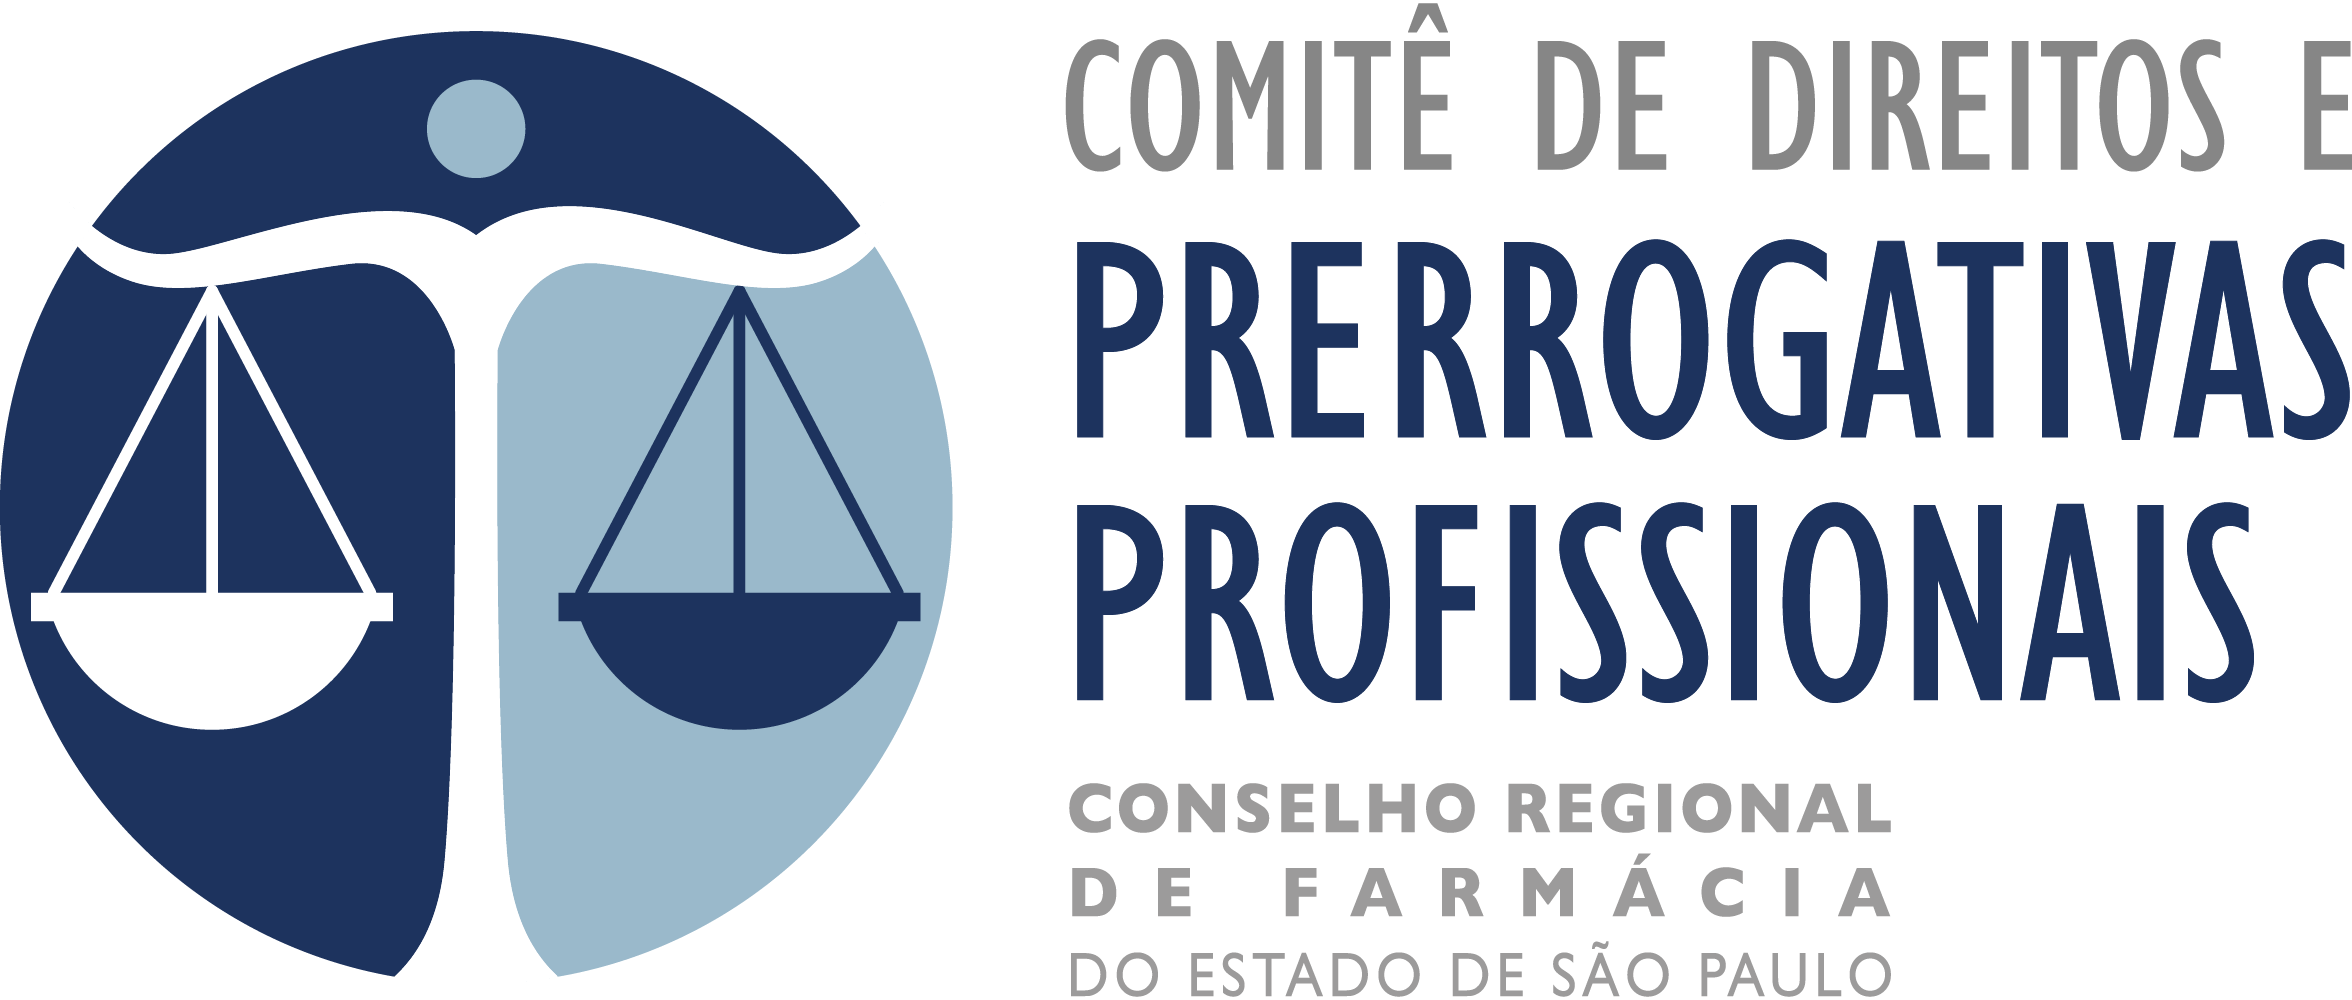 Comitê de Direitos e Prerrogativas Profissionais